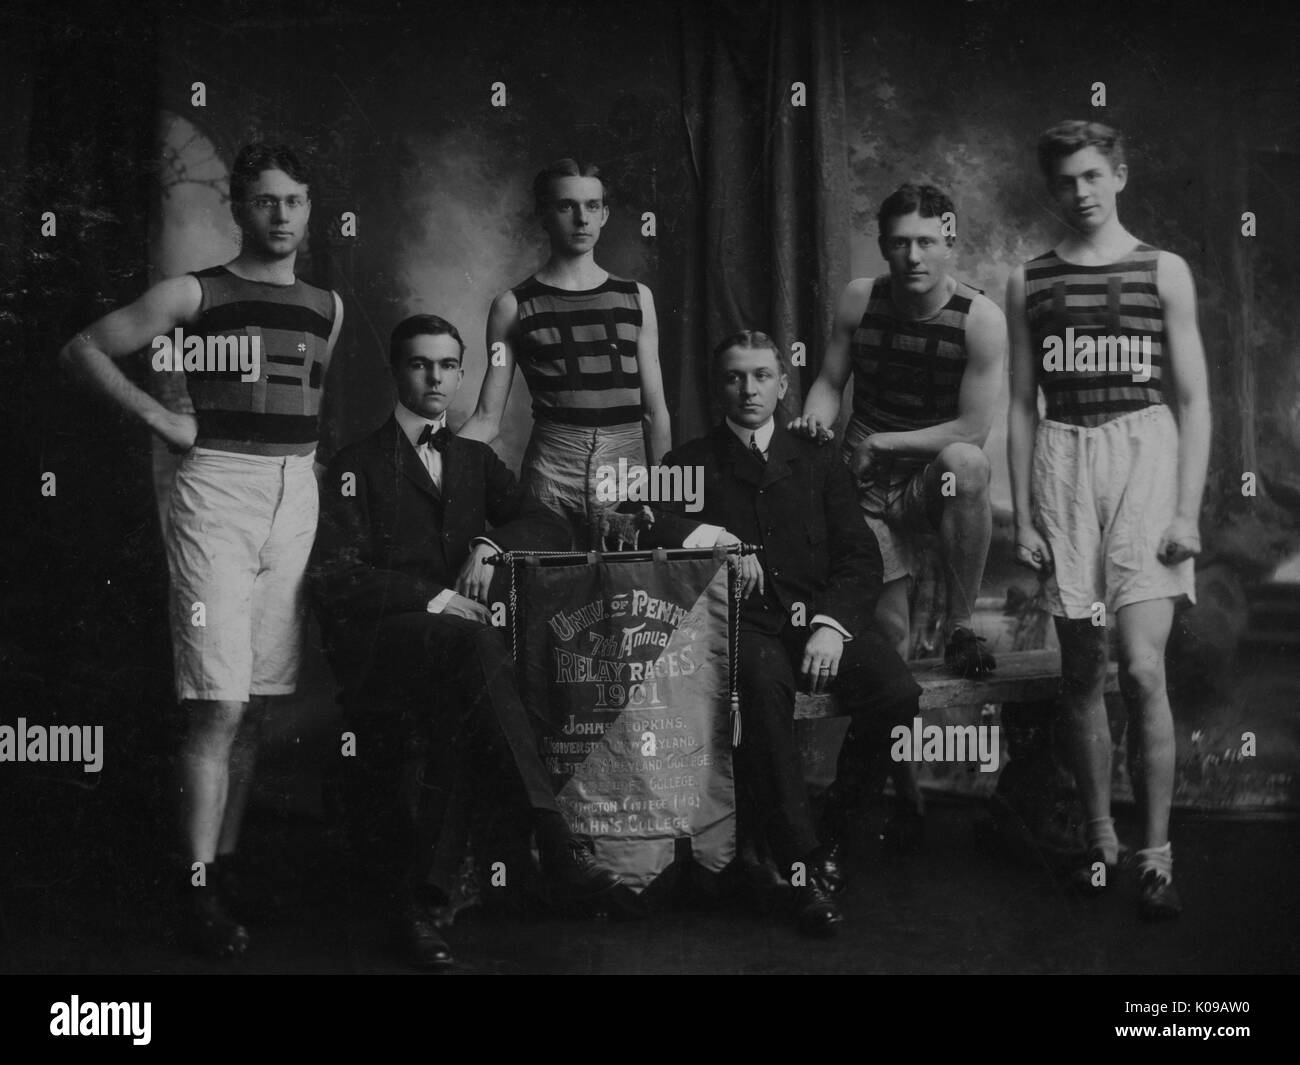 Photo de groupe, les membres de l'équipe en uniforme sont debout autour de l'équipe manager Pearre assis et Macdermott qui sont assis de chaque côté de la bannière de championnat, le 21 avril 1900. Banque D'Images